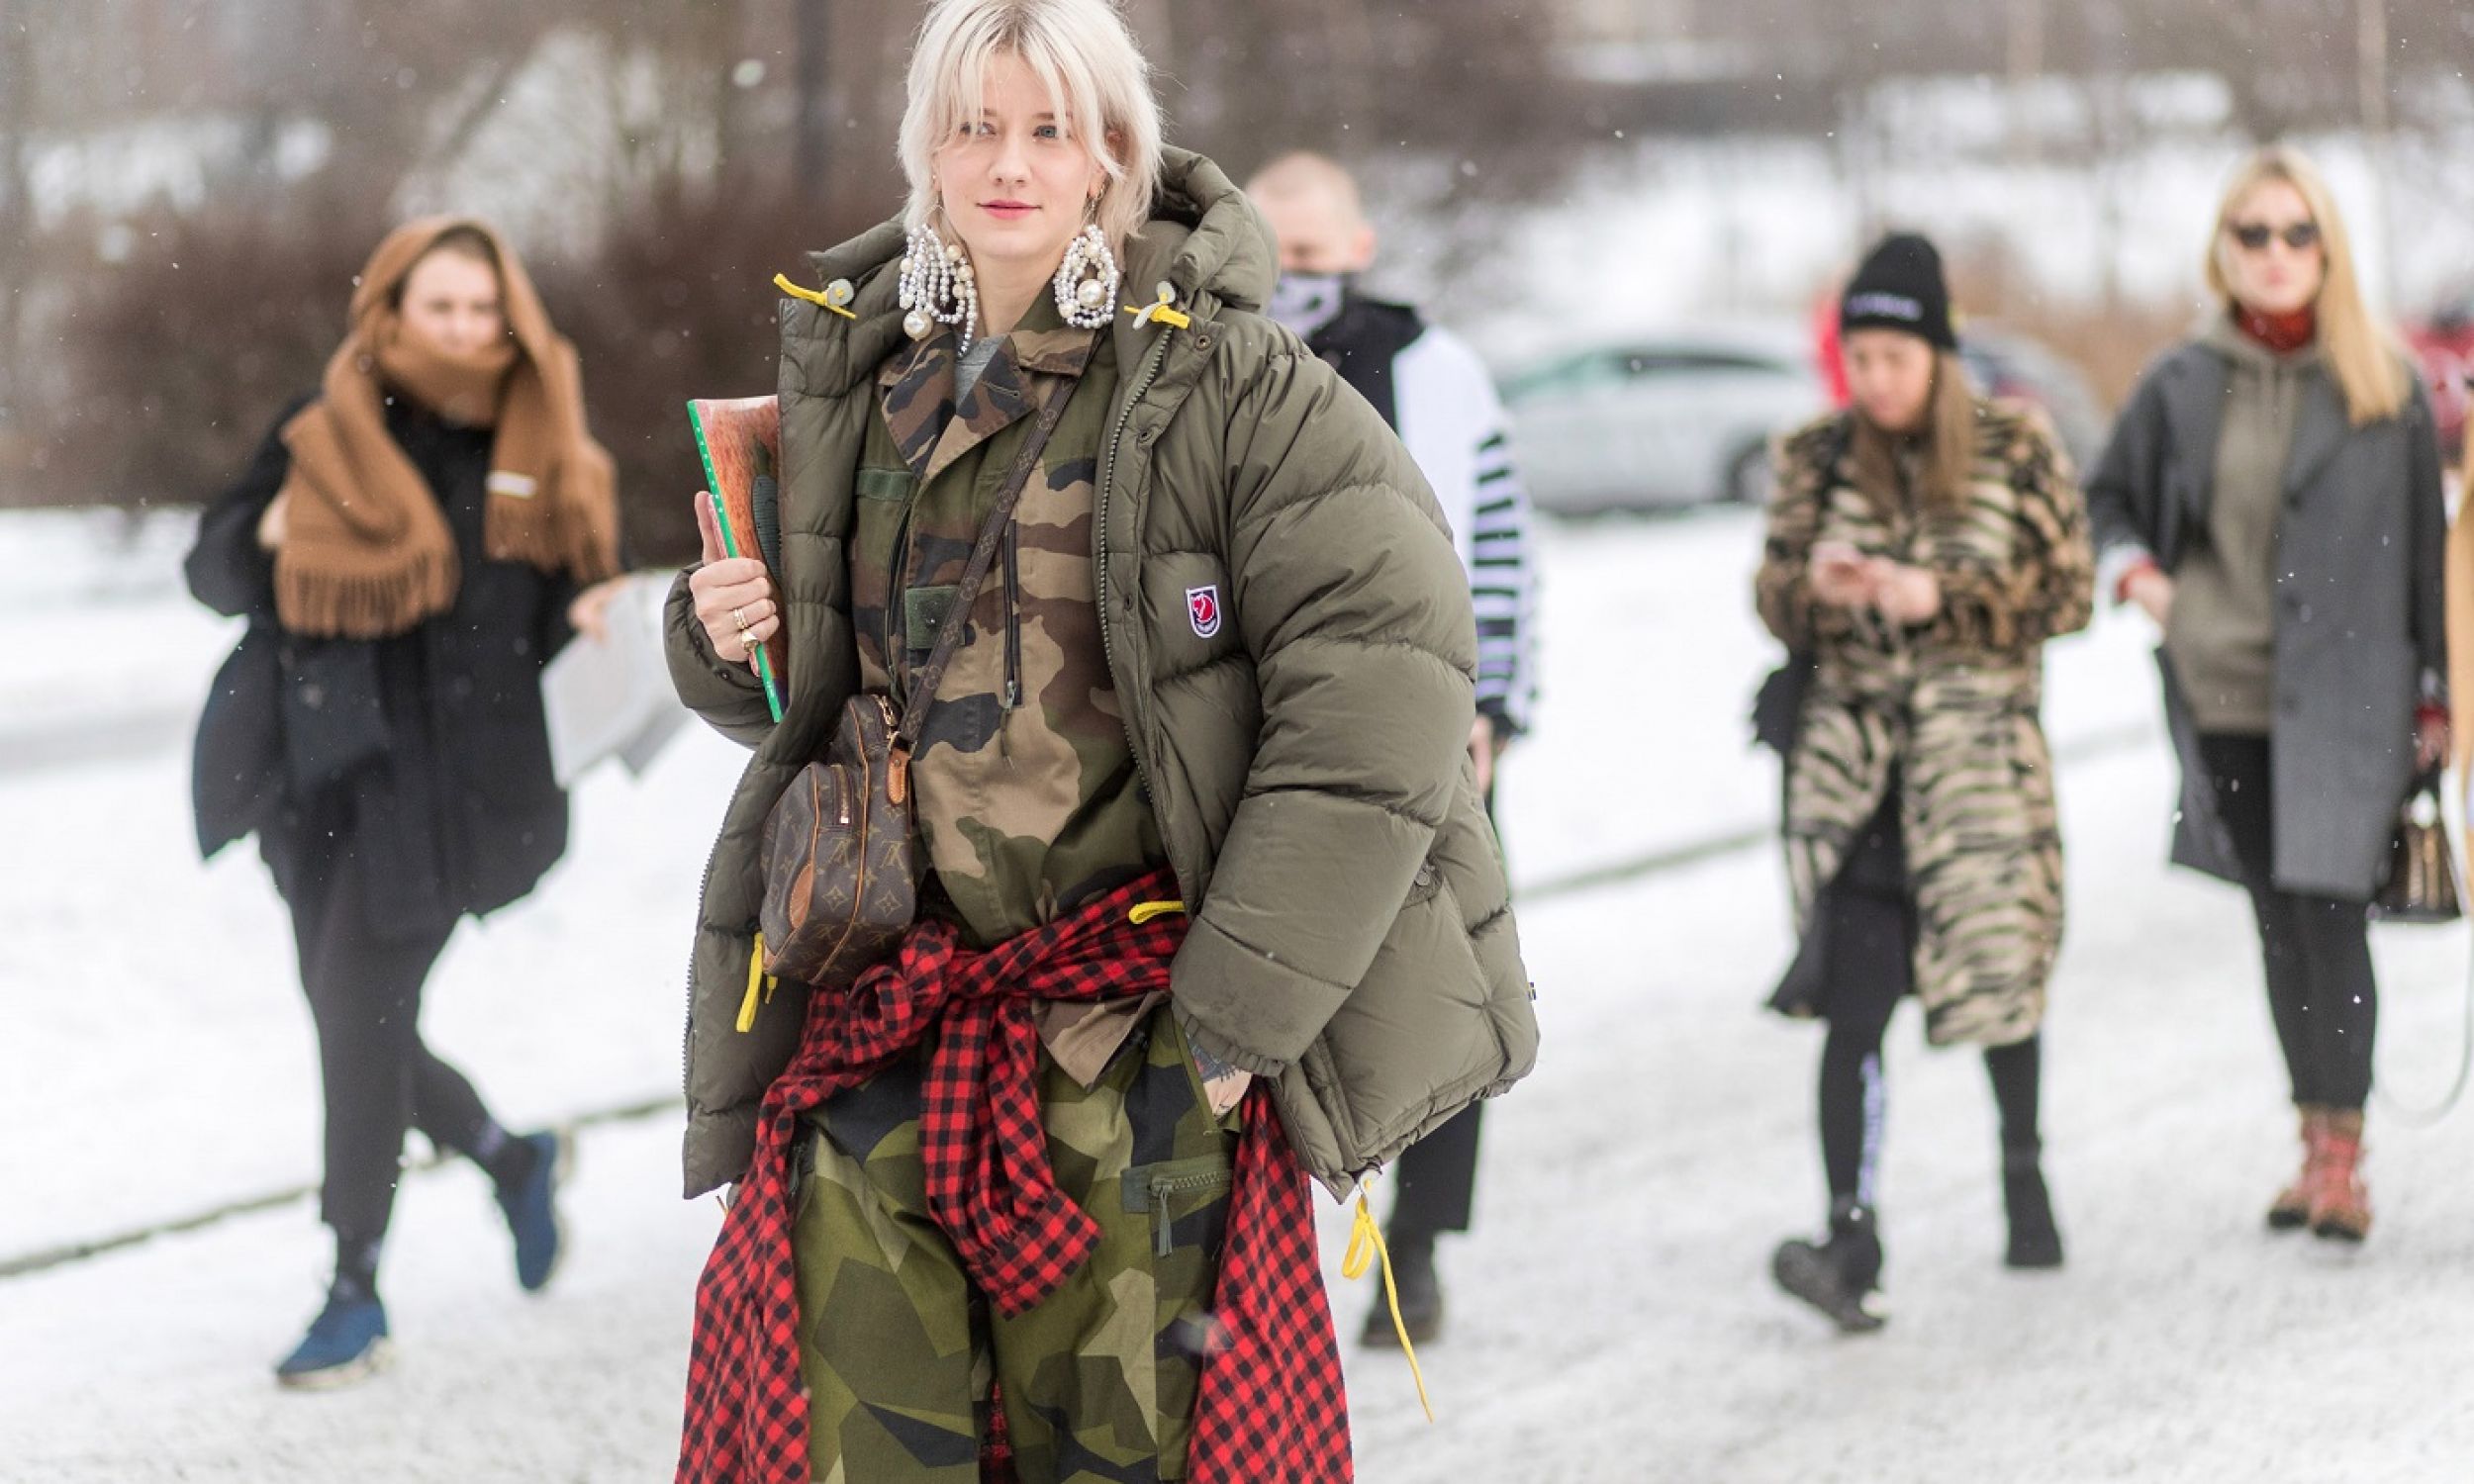 Marianne Theodorsen ubrana w oliwkową kurtkę puchową i kamuflażowe spodnie, luty 2017 r. w Oslo, Norwegia. Fot. Christian Vierig / Getty Images